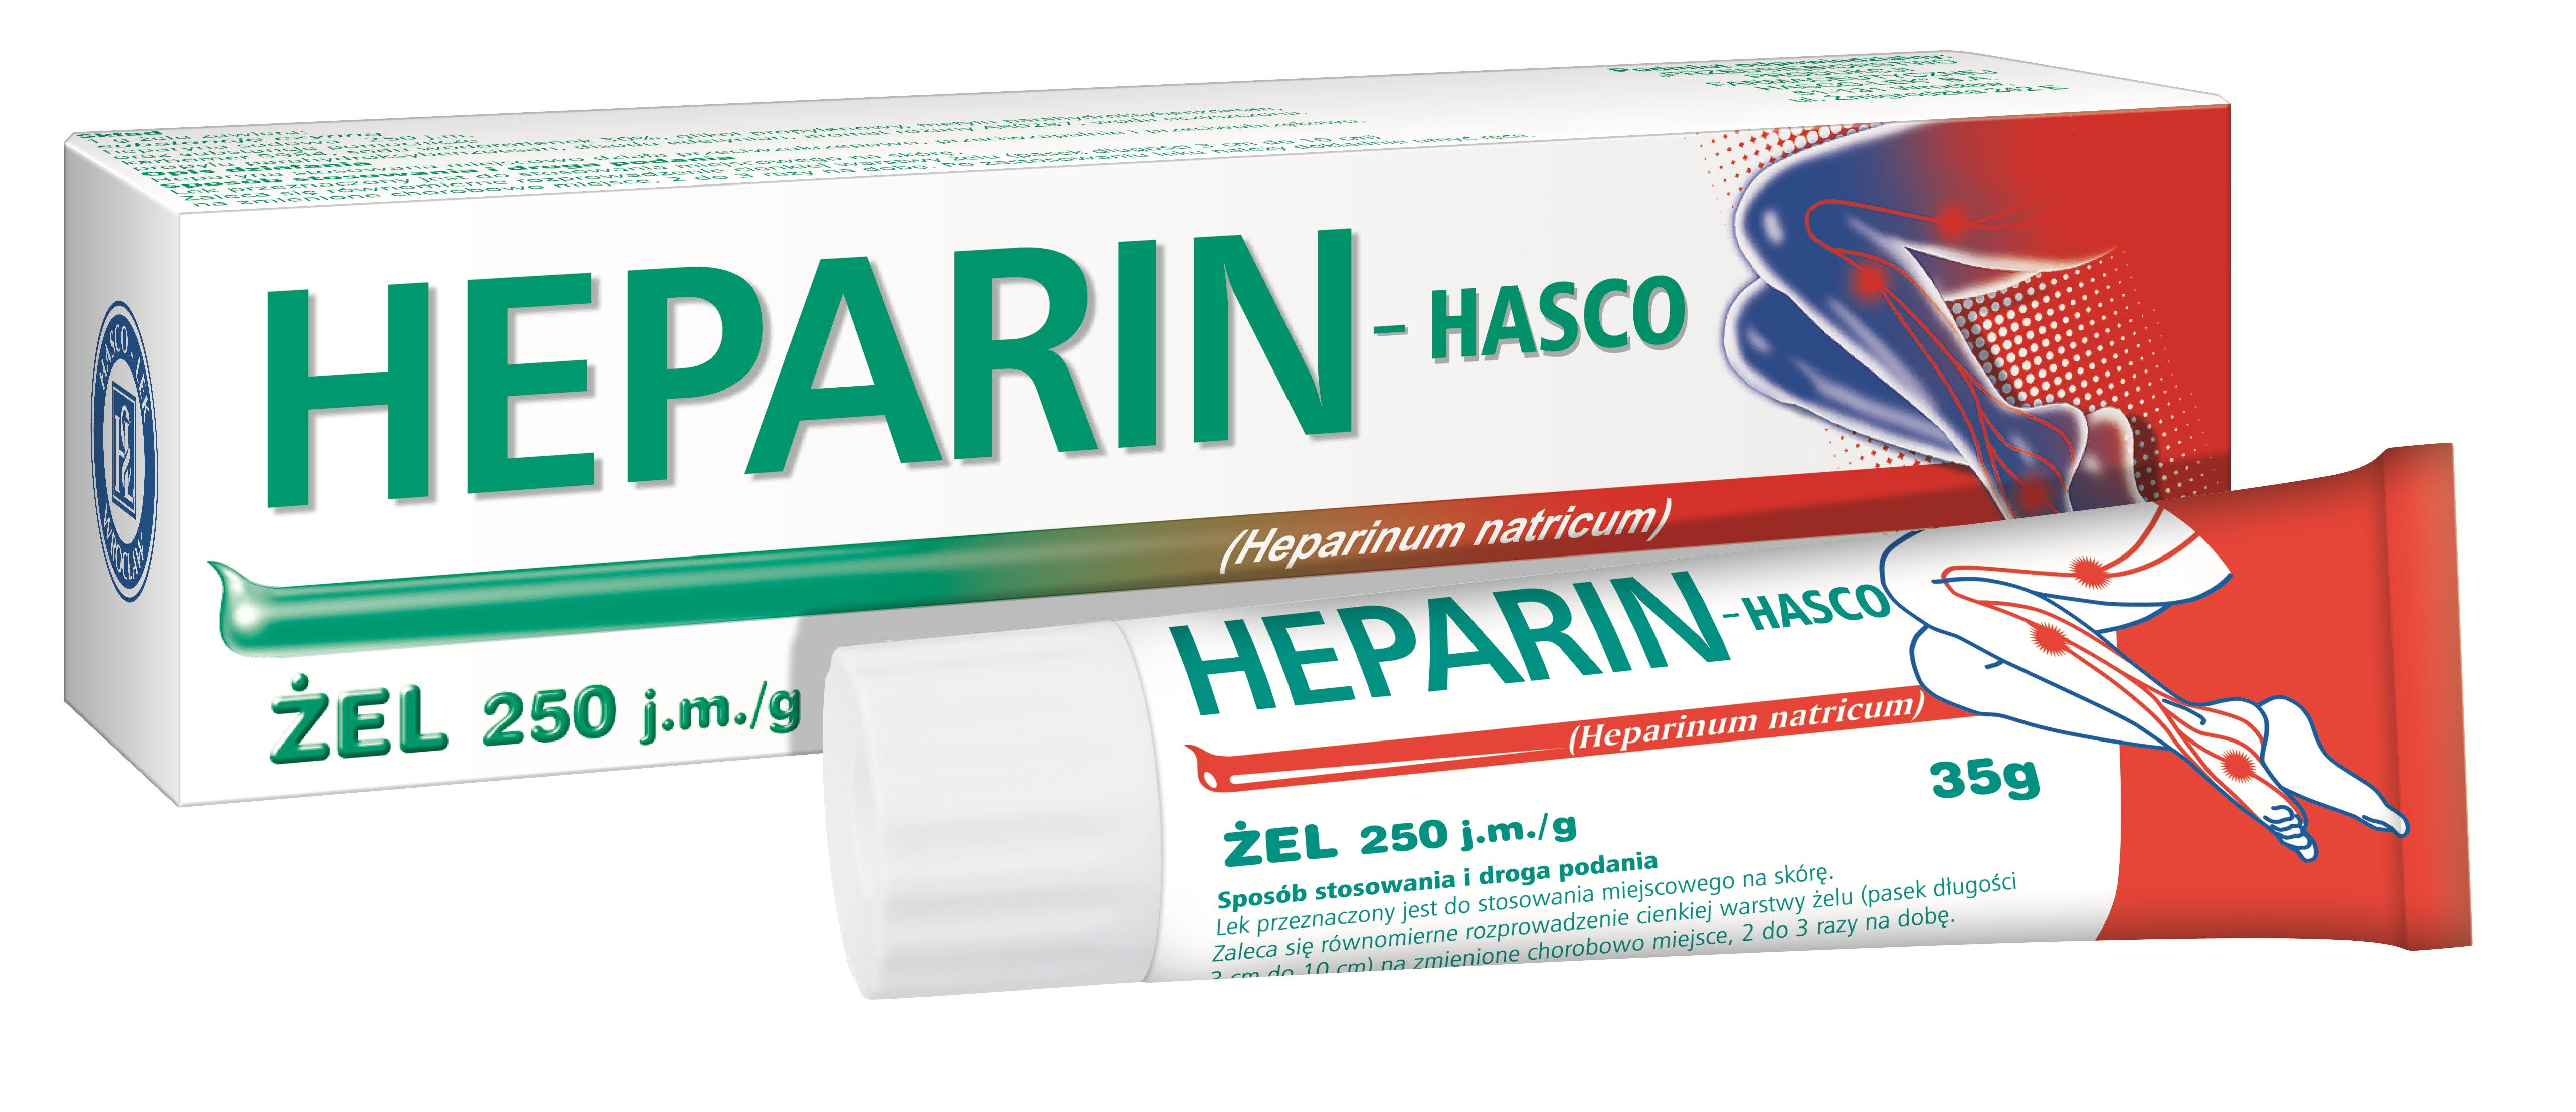 Heparin-Hasco żel